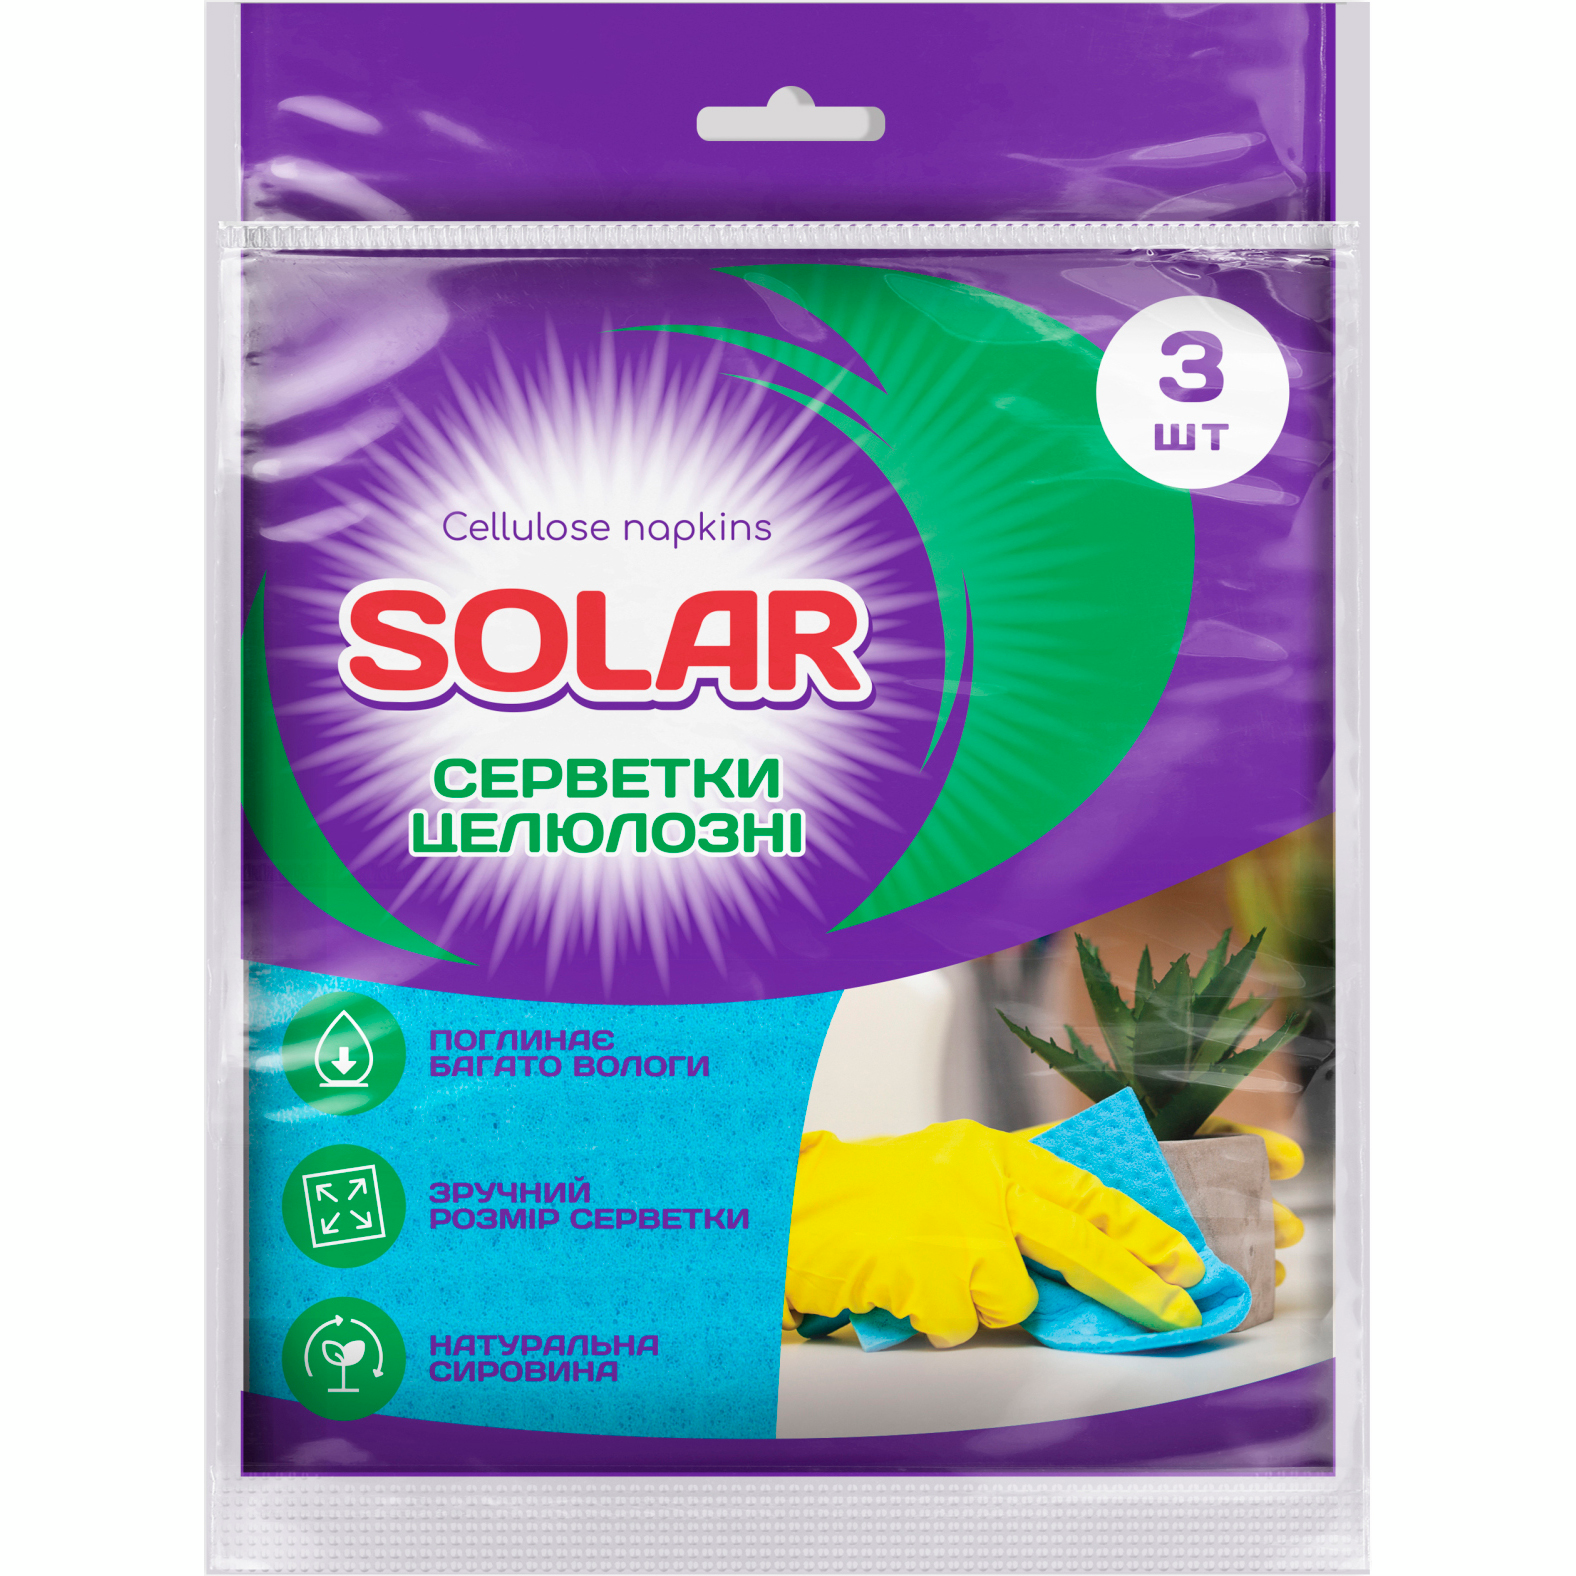 Салфетки для уборки целлюлозные Solar влагопоглащающие 3шт фото 1